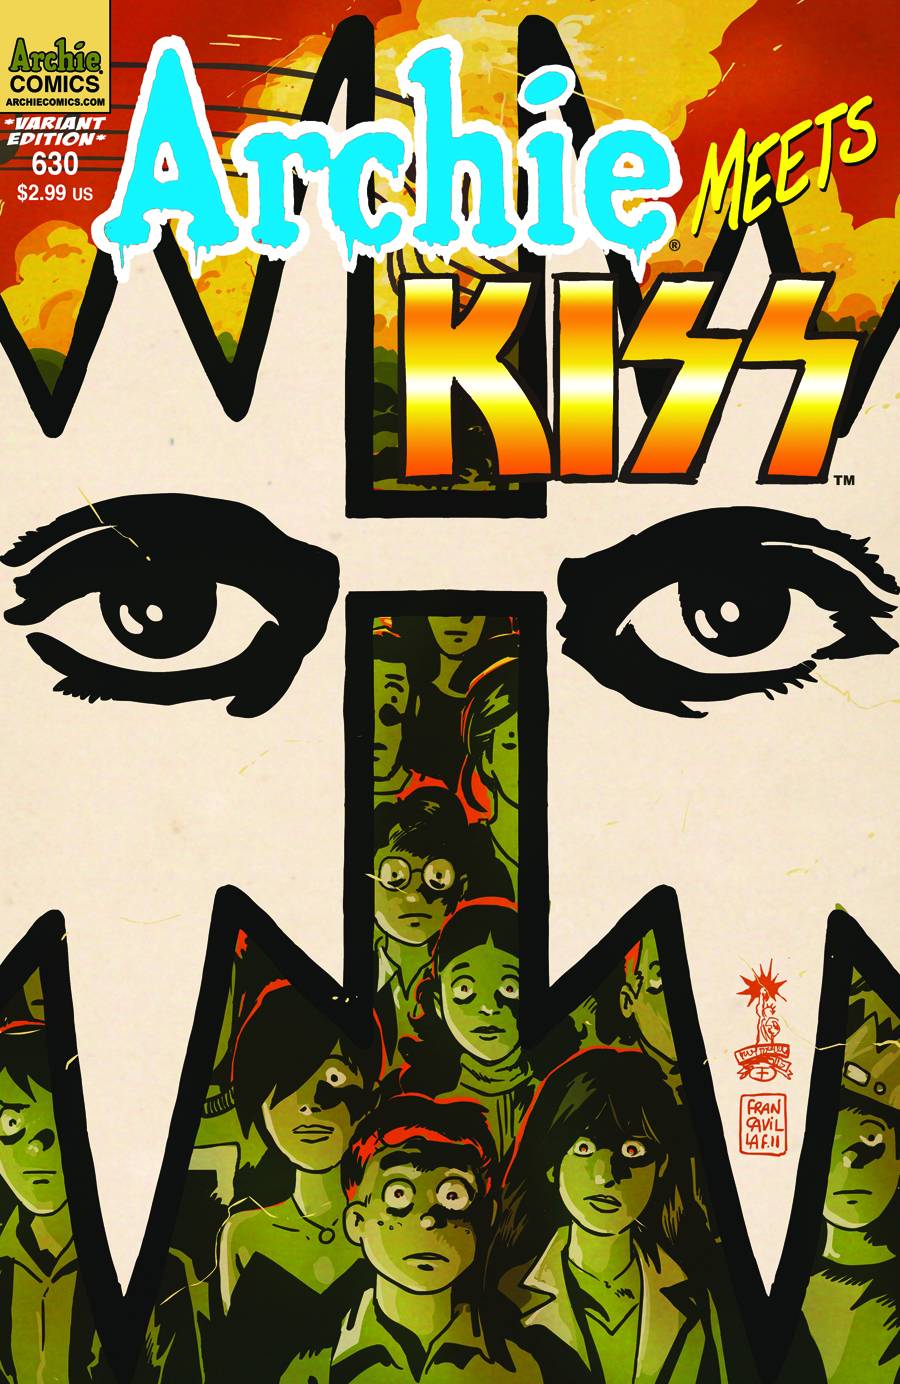 Archie #630 (Archie Meets Kiss Part 4 ) Variant Cover